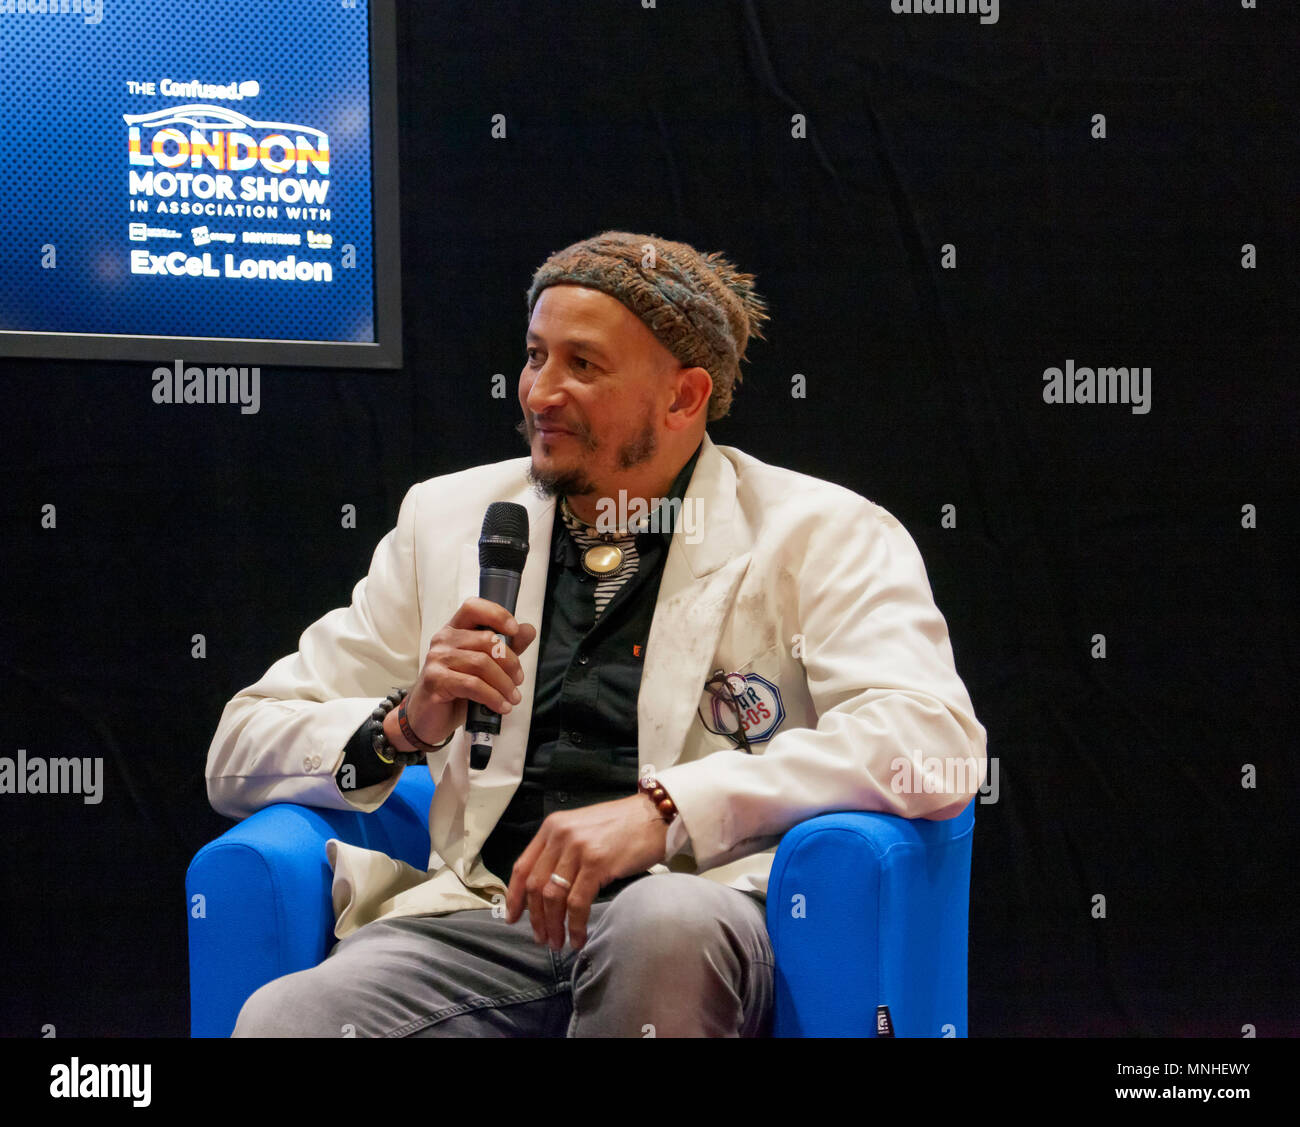 Fuzz Townshend, à partir de l'émission de télévision, location de S.O.S., interviewé à la salle de conférence, au cours de la journée de presse du salon automobile de Londres 2018. Banque D'Images